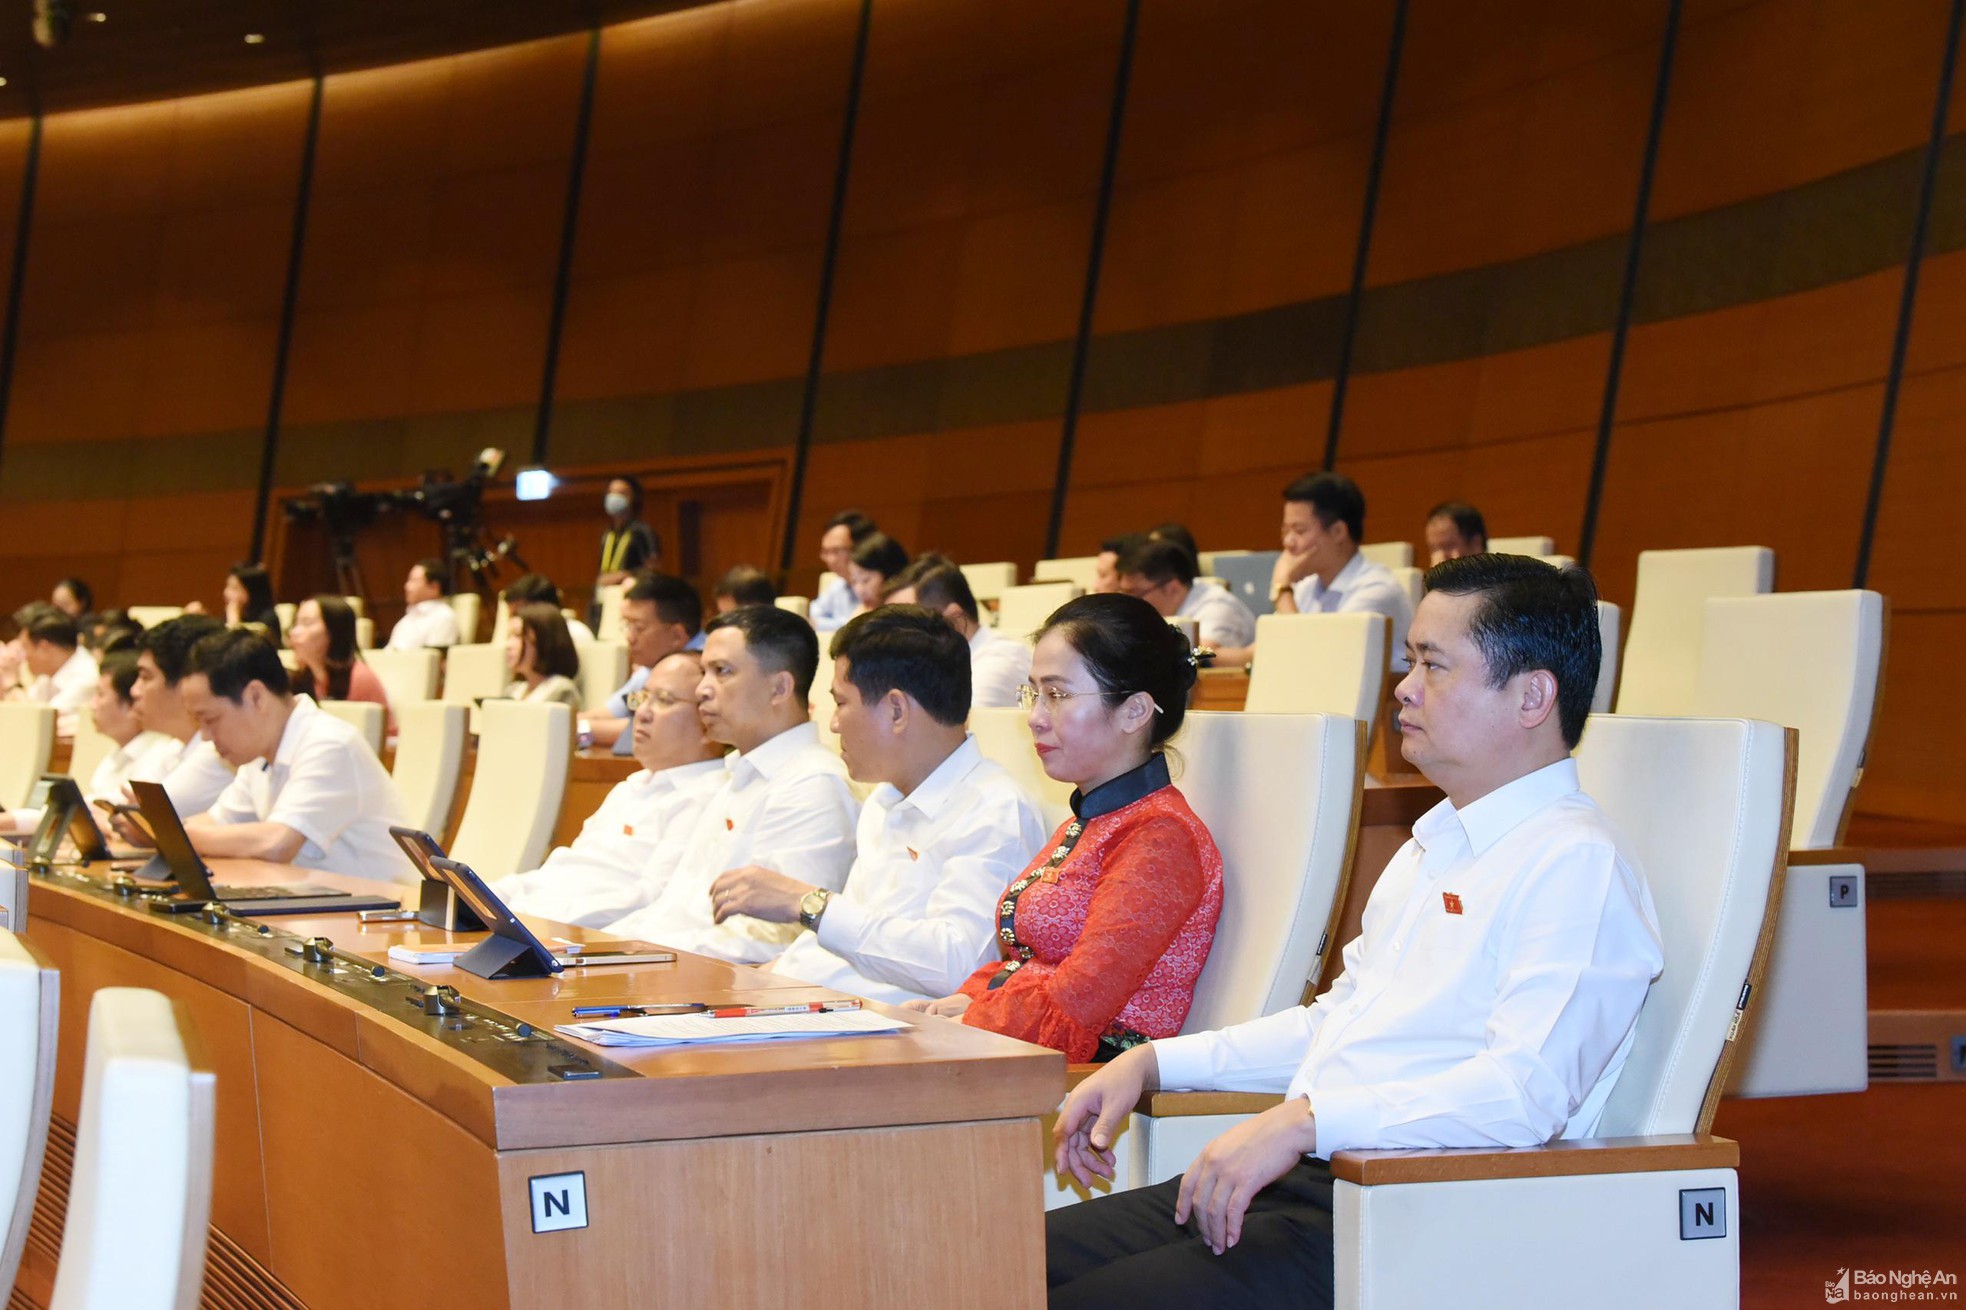  Quốc hội hoàn thành phiên chất vấn, trả lời chất vấn tại kỳ họp thứ 3